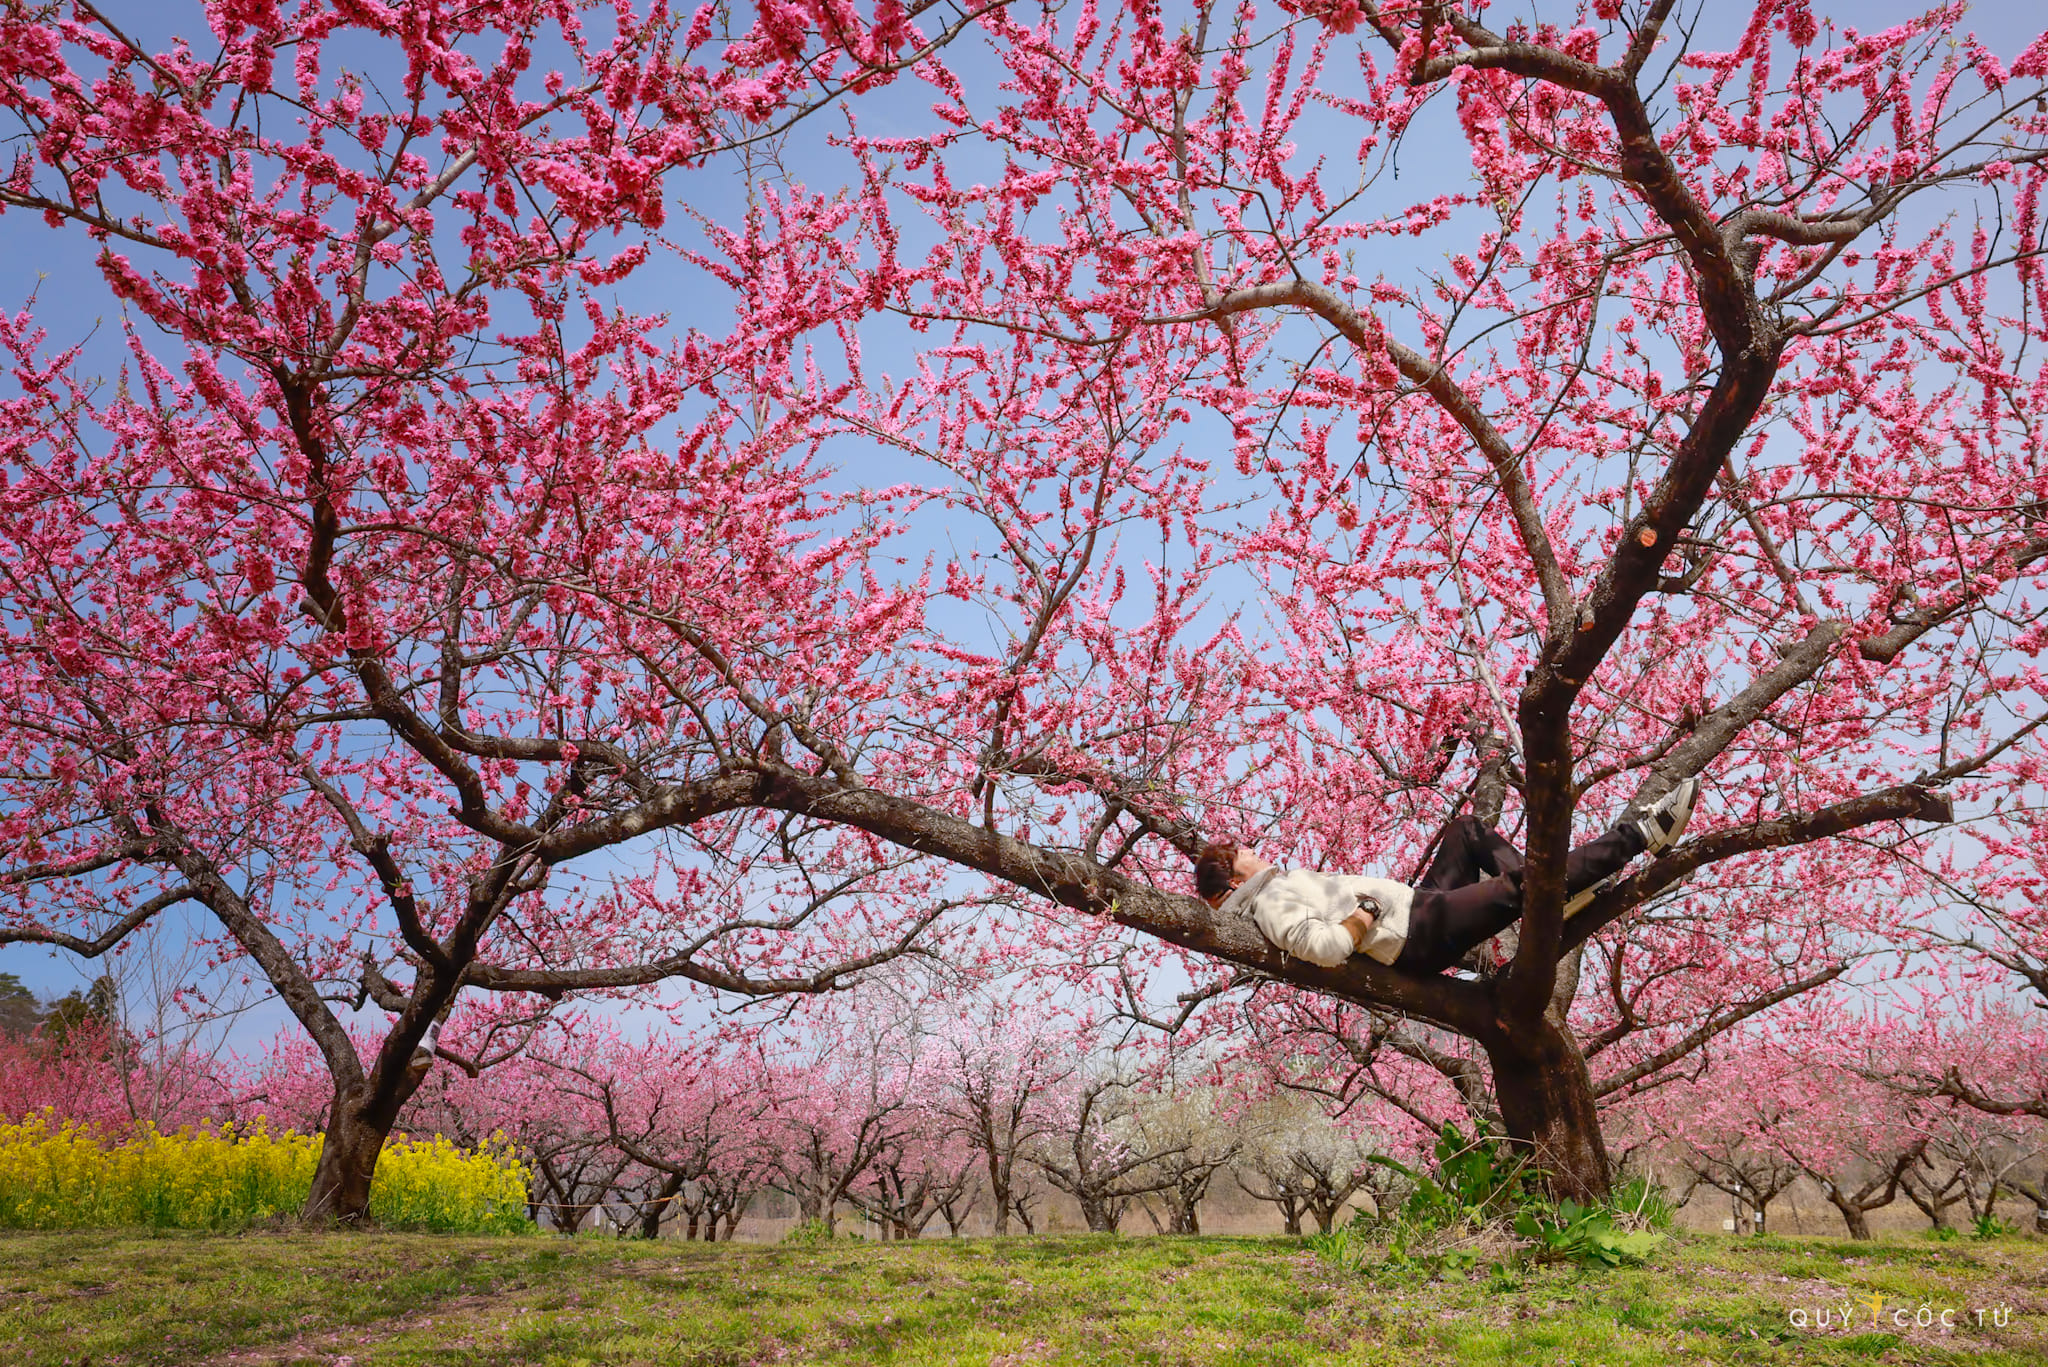 Lần đầu ngắm hoa anh đào ở Fukushima, blogger Quỷ Cốc Tử chia sẻ kinh nghiệm và cảm xúc: “Thời gian đẹp nhất để ngắm là buổi sáng sớm nắng mai dịu nhẹ. Vườn đào chớm bừng tỉnh mà còn e ấp sau một đêm say giấc, sương mai vẫn vương trên từng cánh hoa. Còn dưới mặt đất, vạn cánh hoa hồng gieo mình trên thảm cỏ xanh ru tình quá đỗi.  Quanh vườn hoa đào là những luống cải nở rộ hoa vàng khiến khung cảnh càng thêm quyến rũ”.